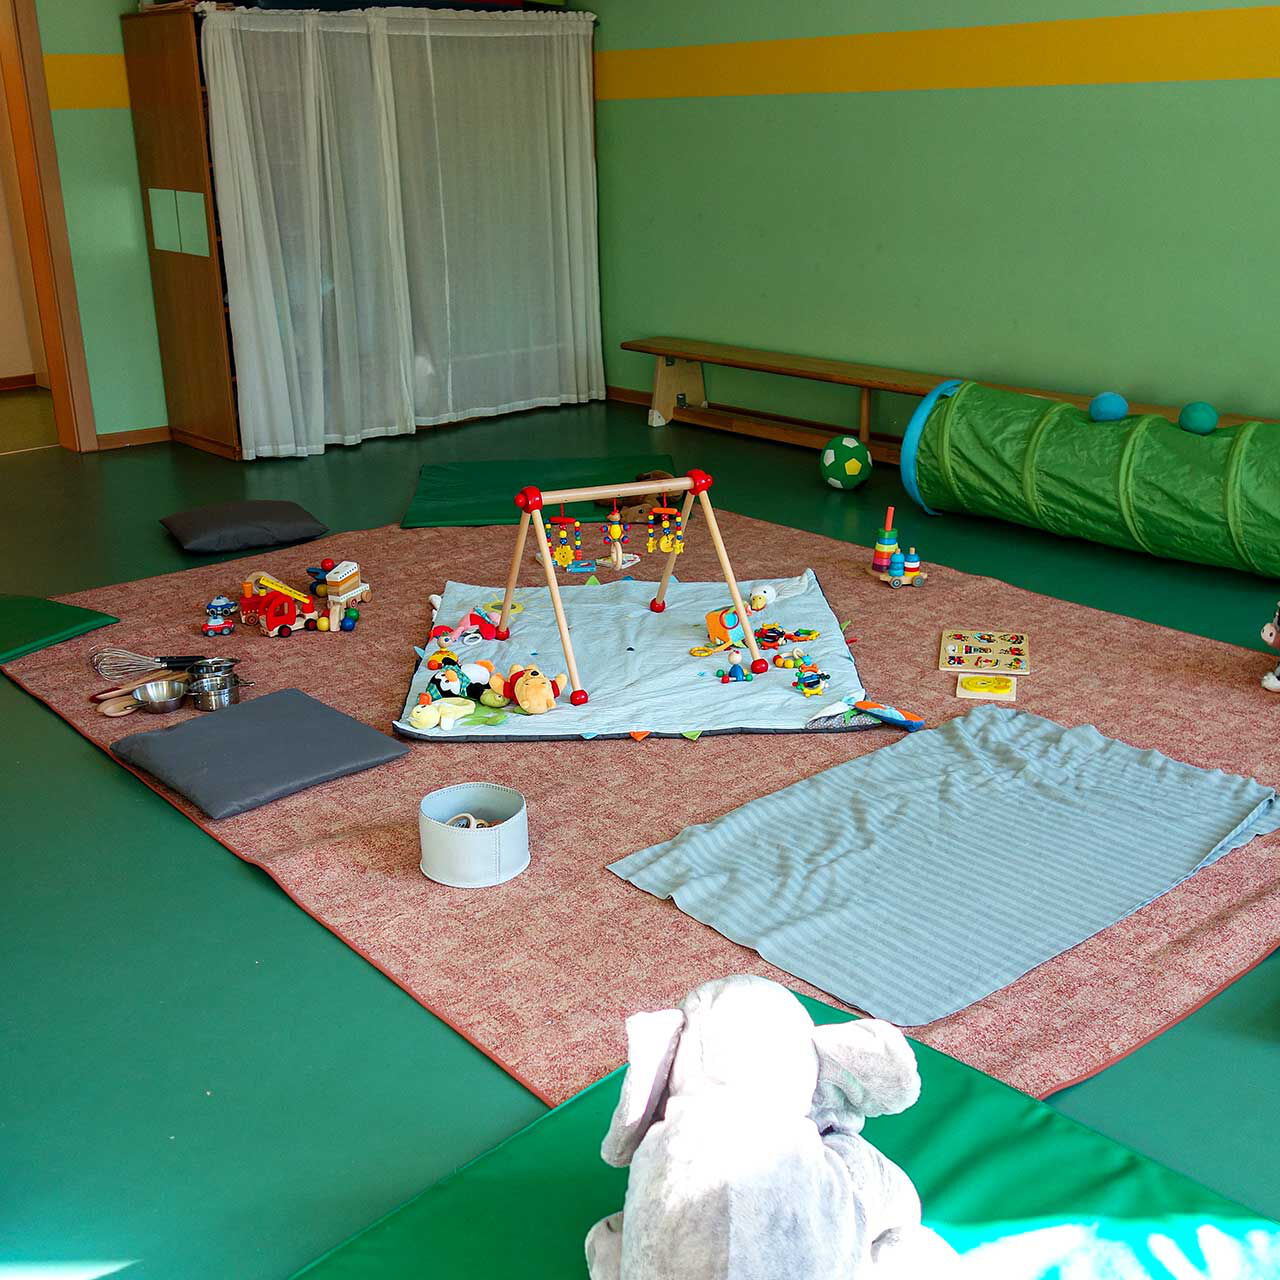 In Vorbereitung auf die Krabbelgruppe sind Decken auf dem Boden, Spielsachen und Matten verteilt.